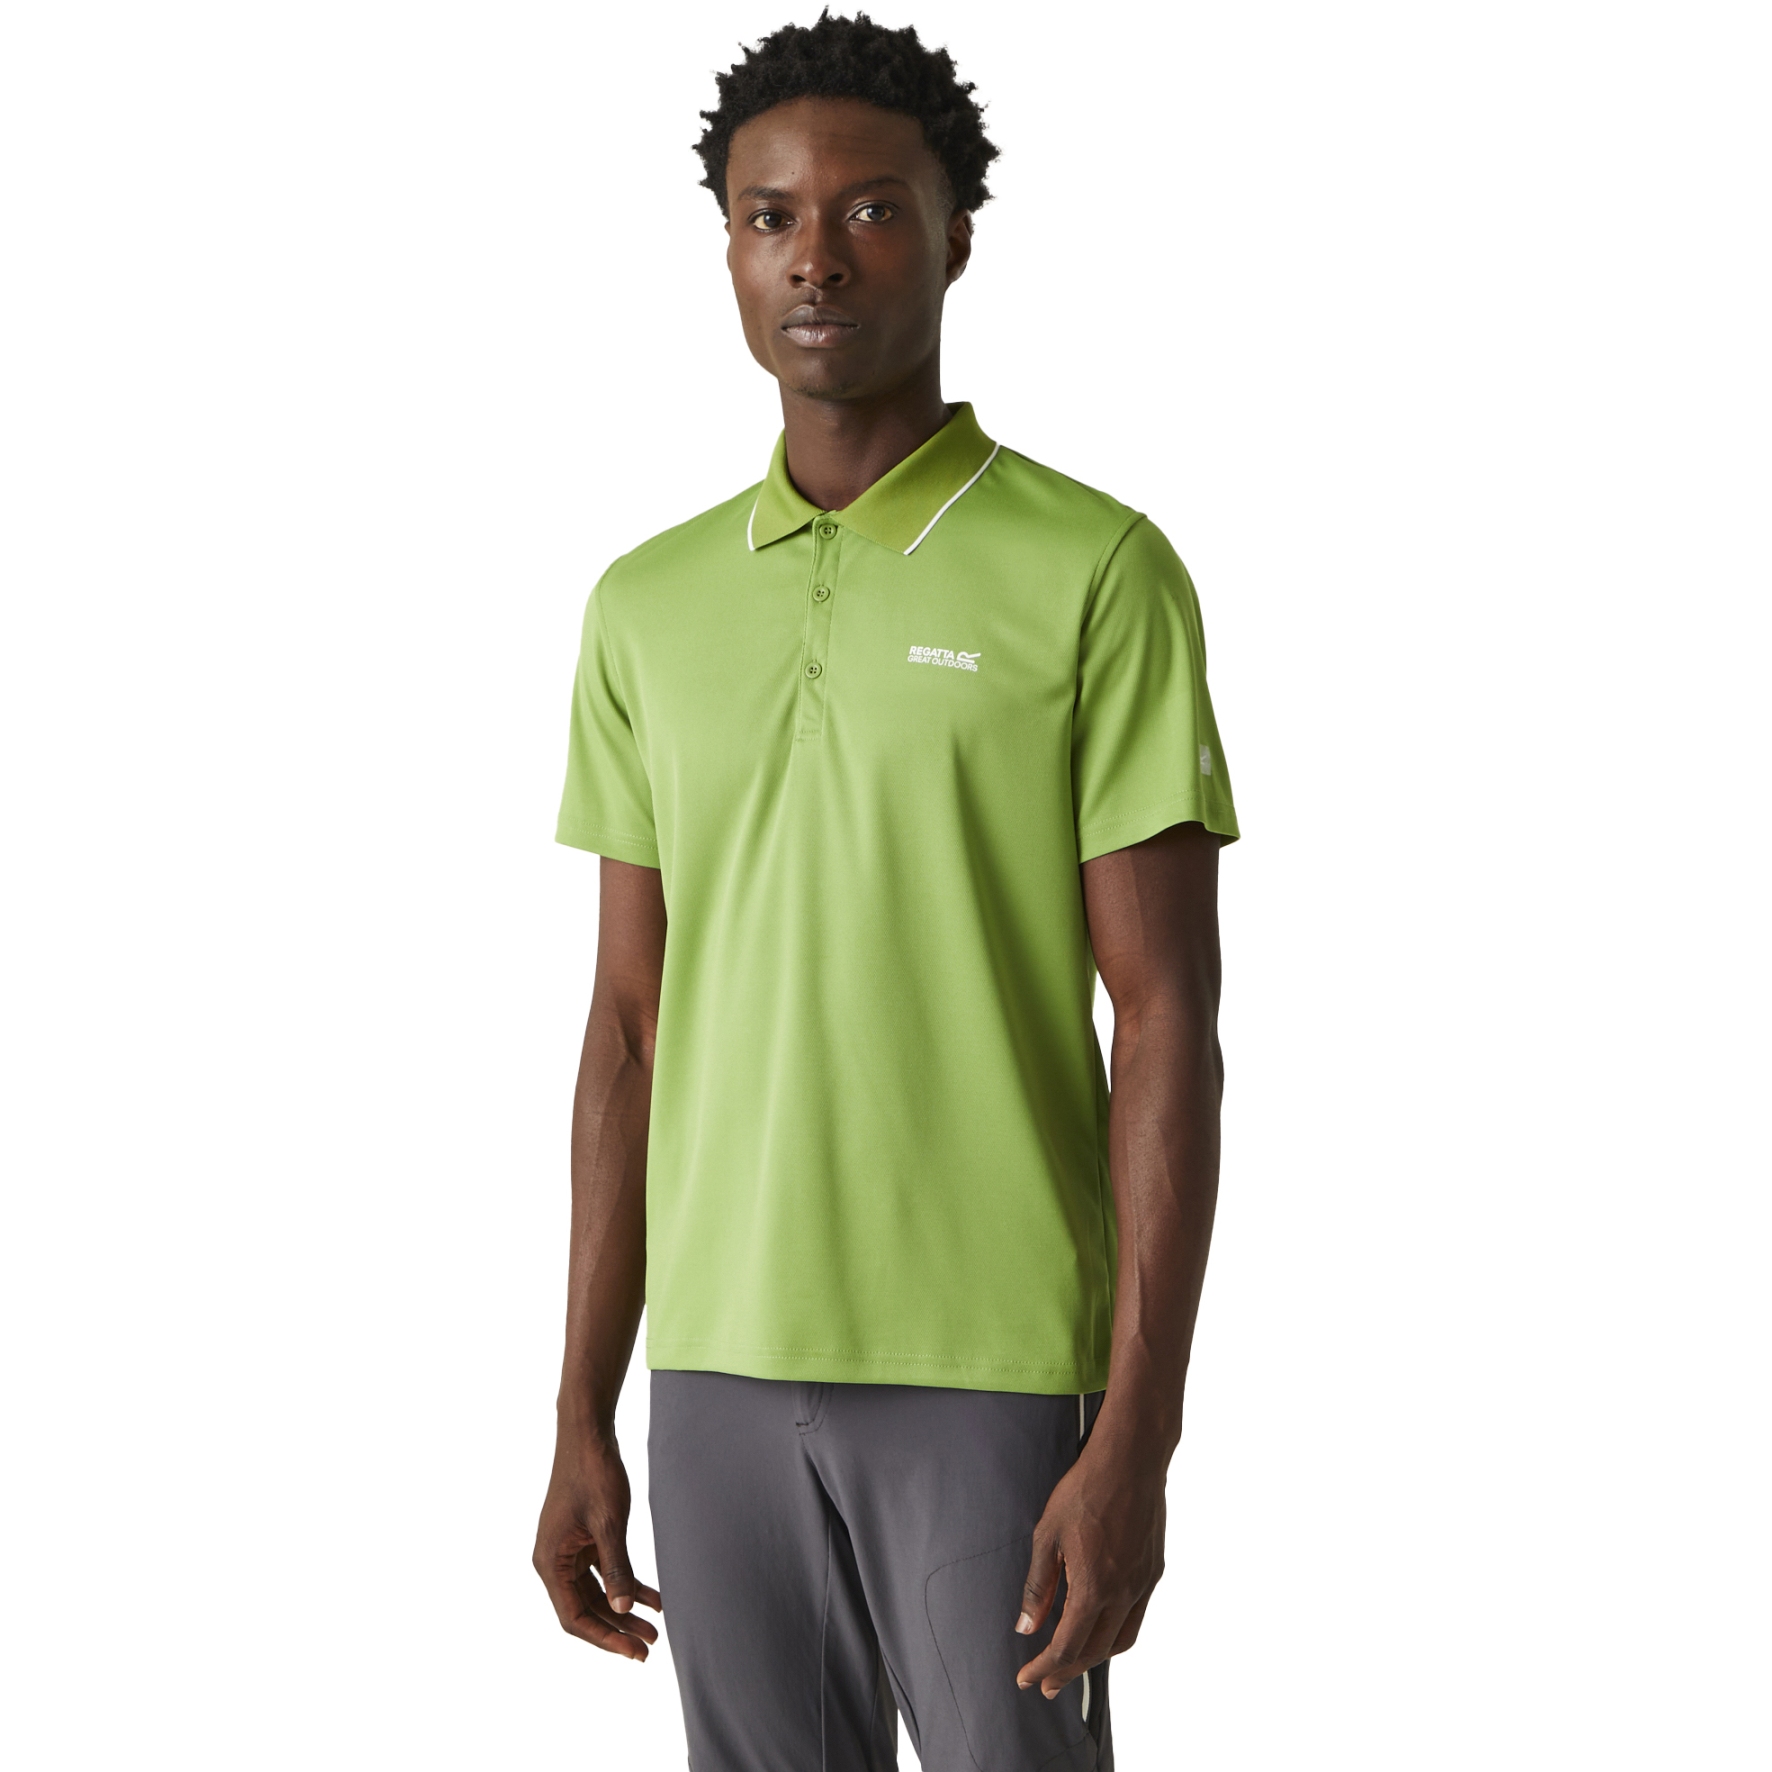 Produktbild von Regatta Maverik V Polo-Shirt Herren - Piquant Green BLV